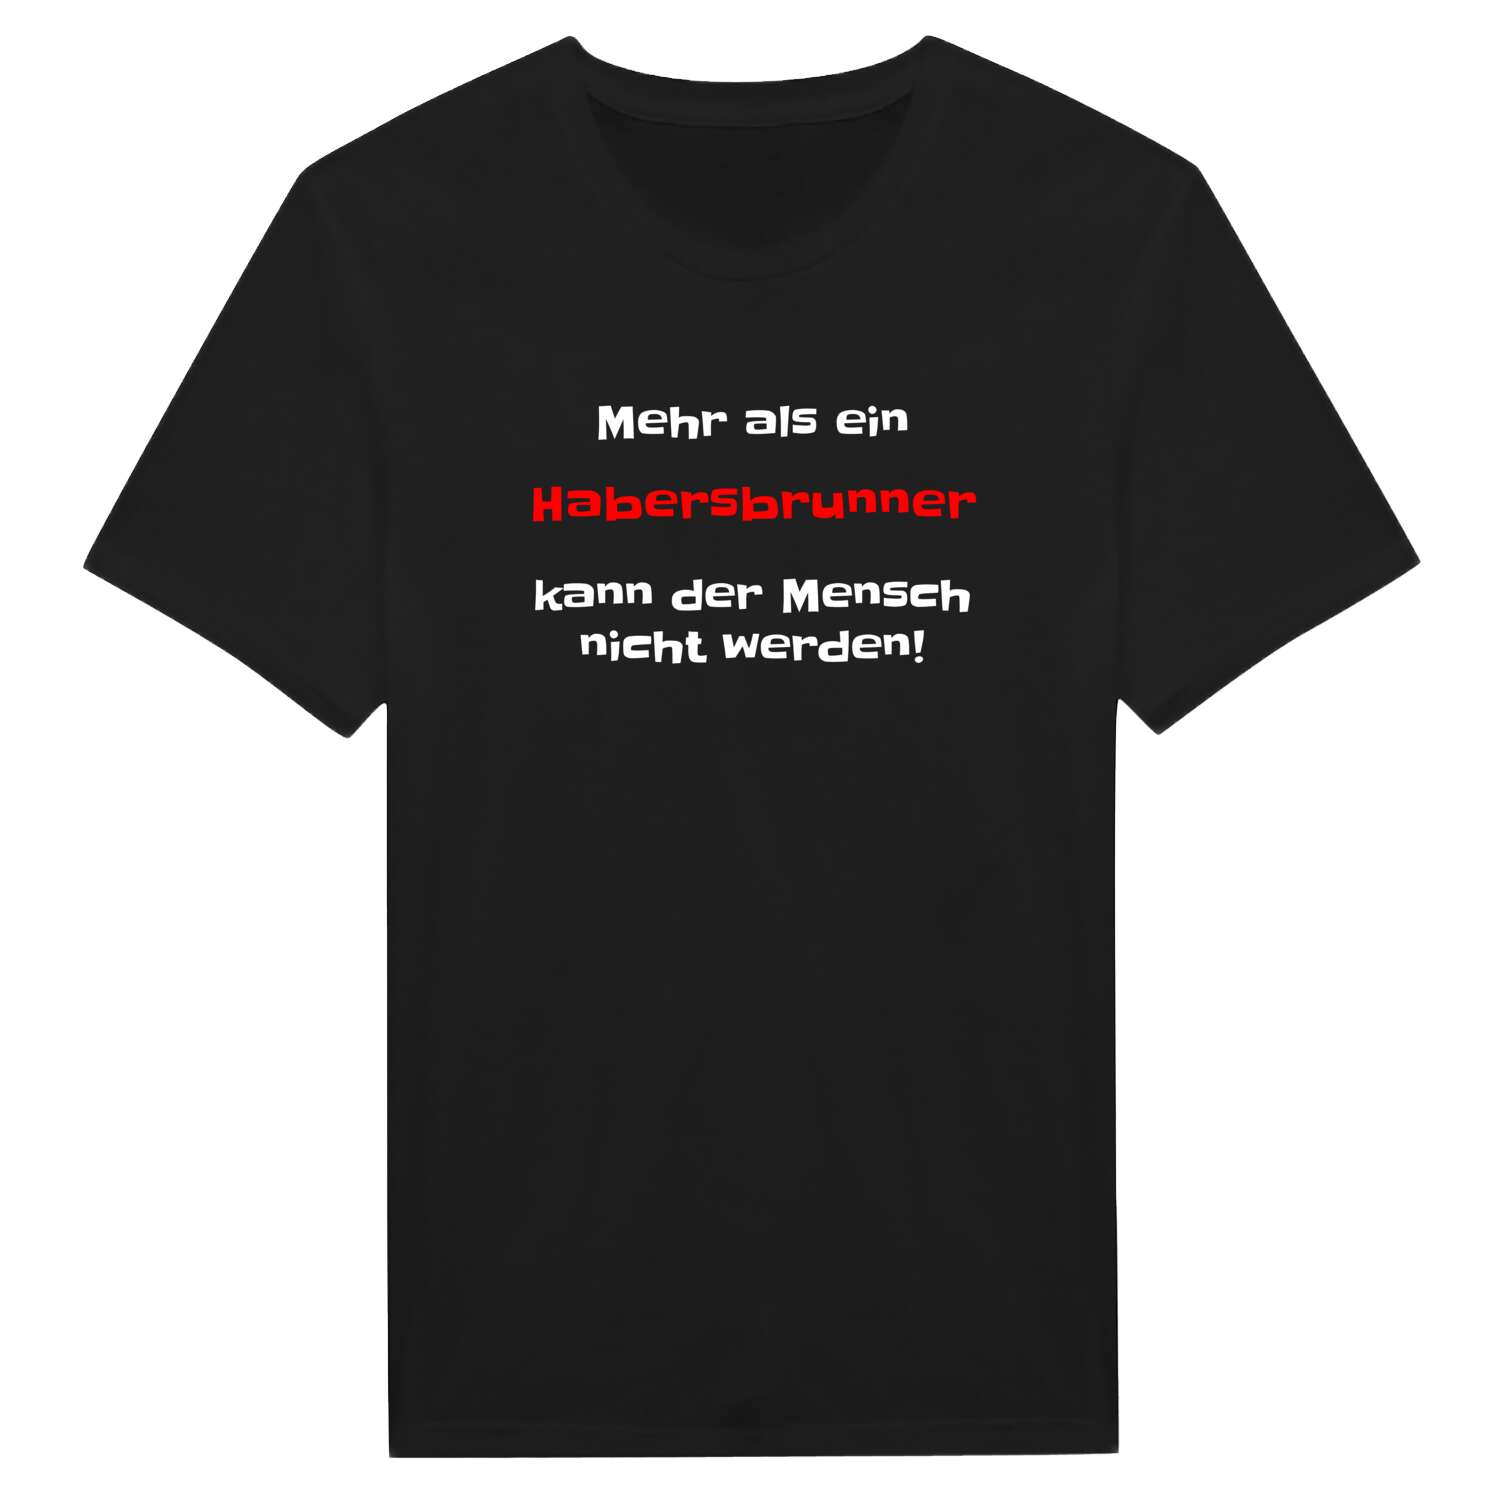 Habersbrunn T-Shirt »Mehr als ein«